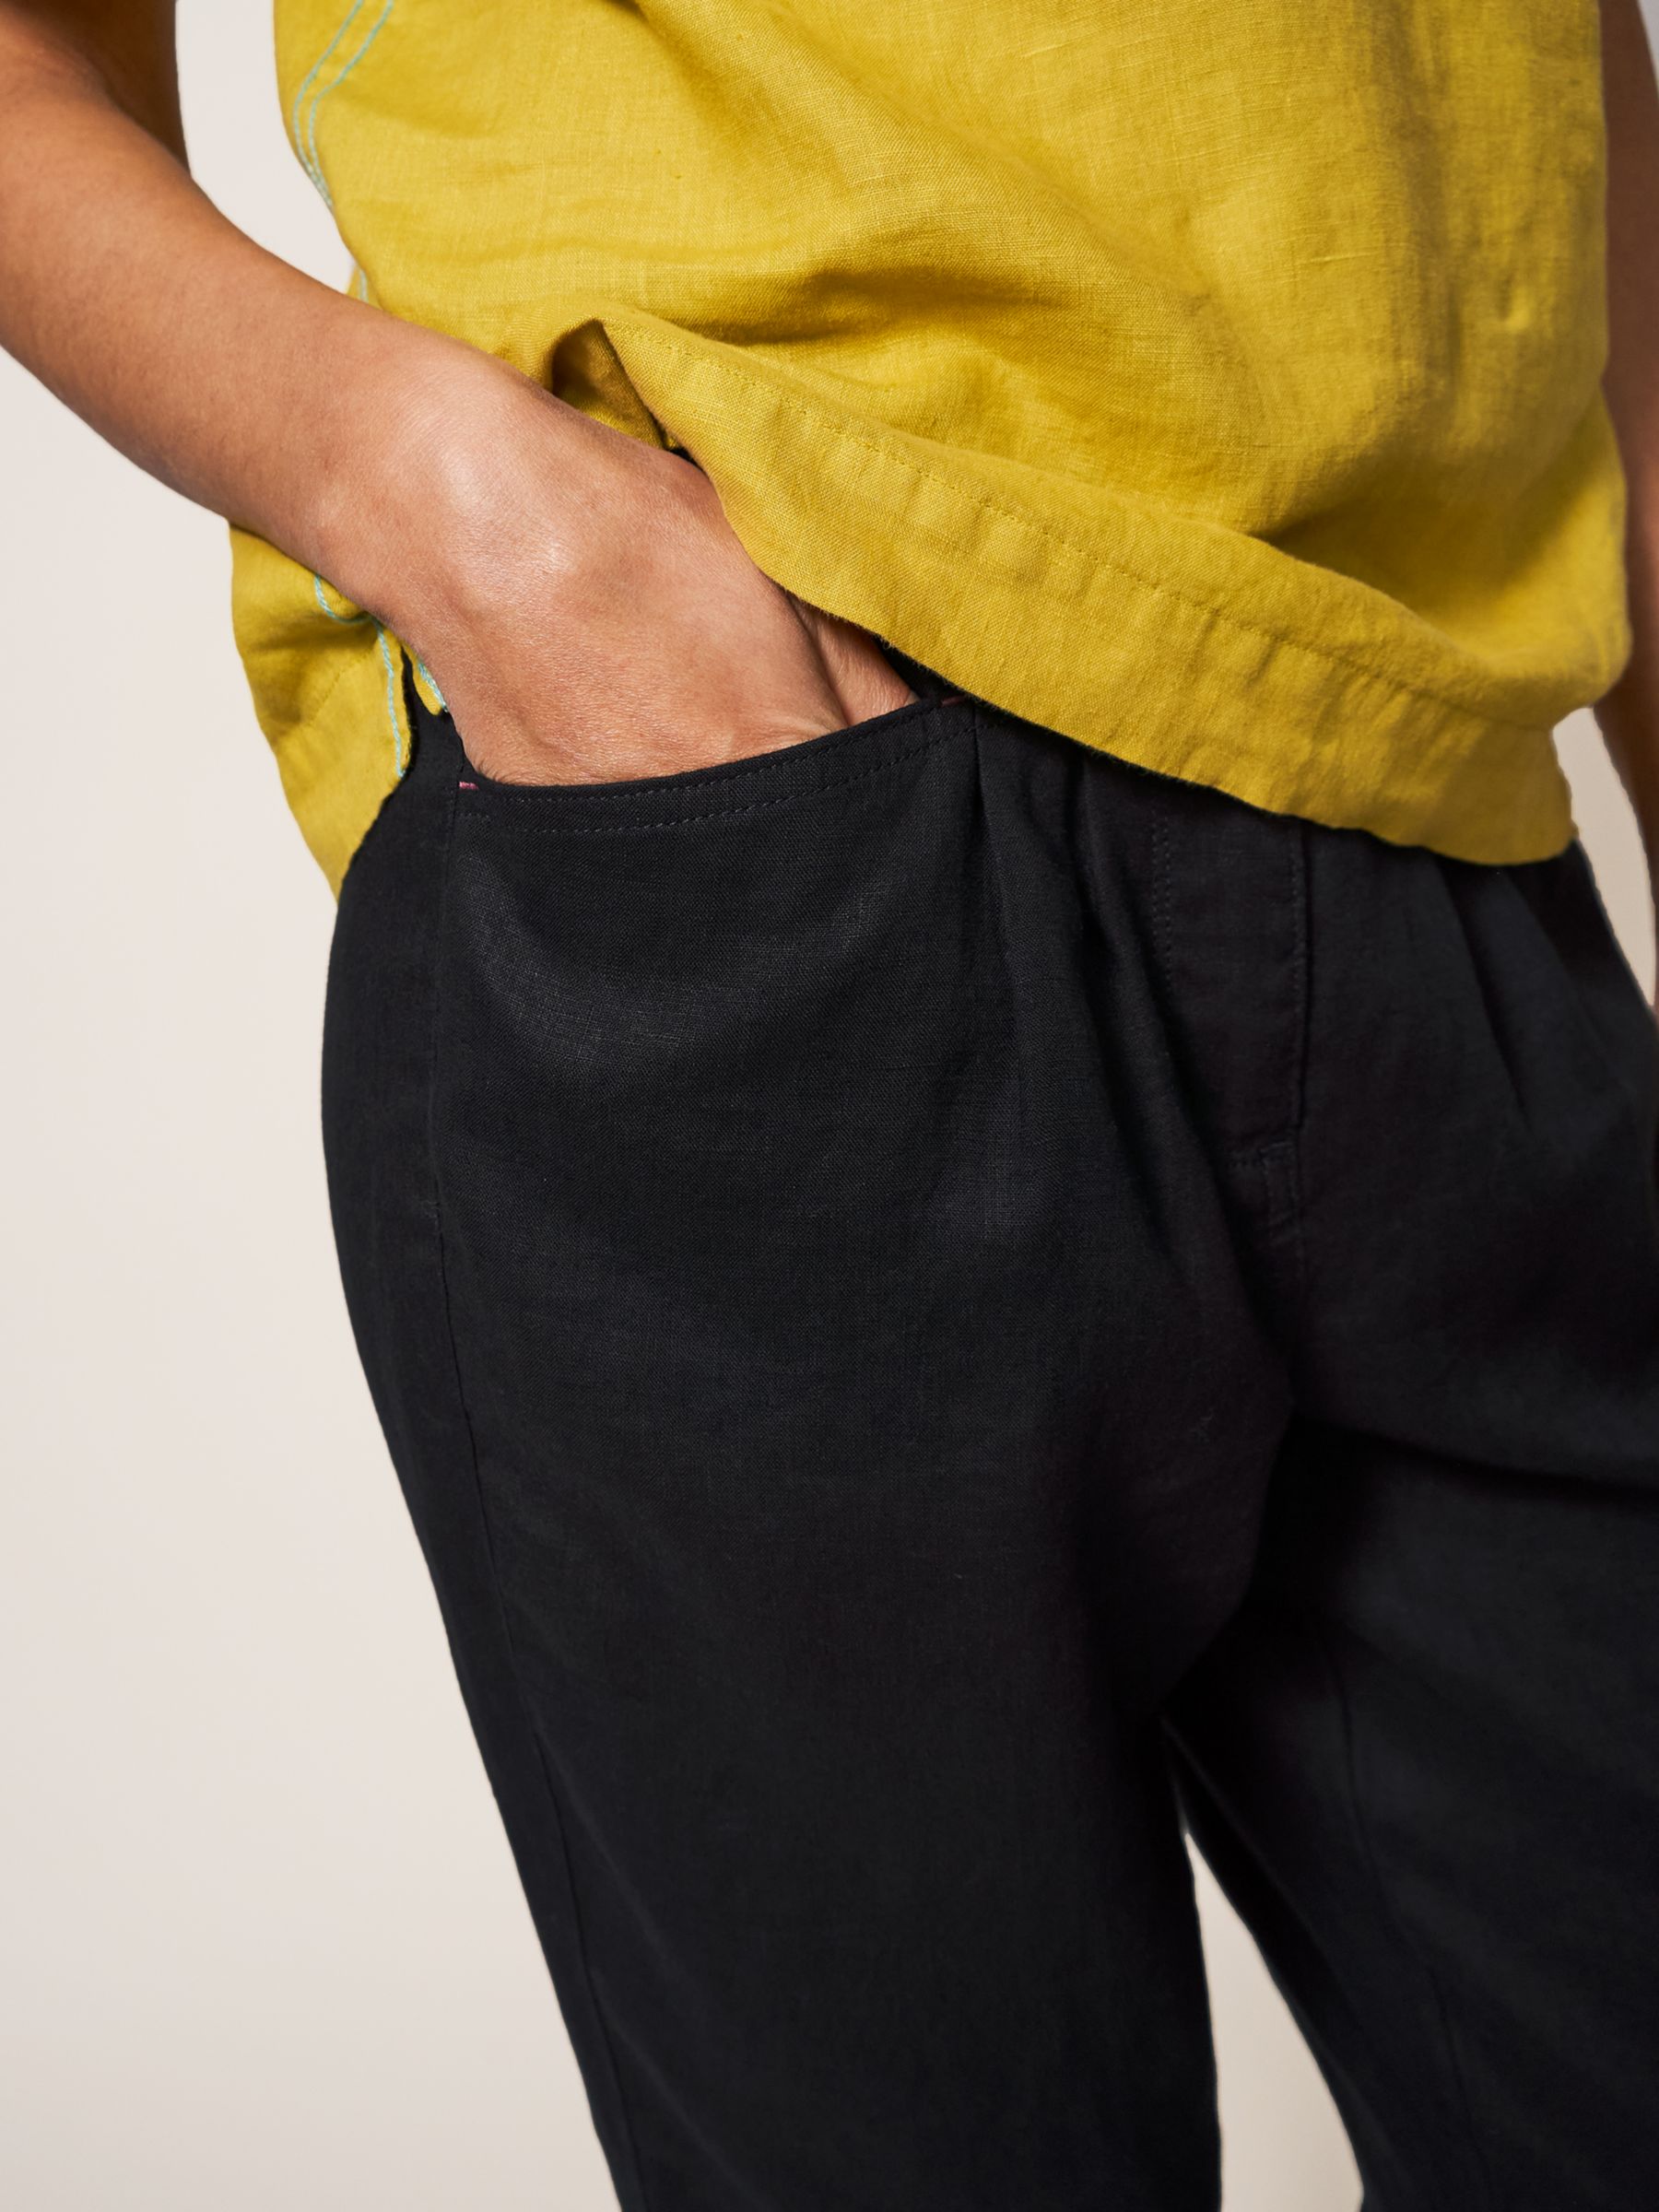 Buy Women's Black Linen Trousers Online